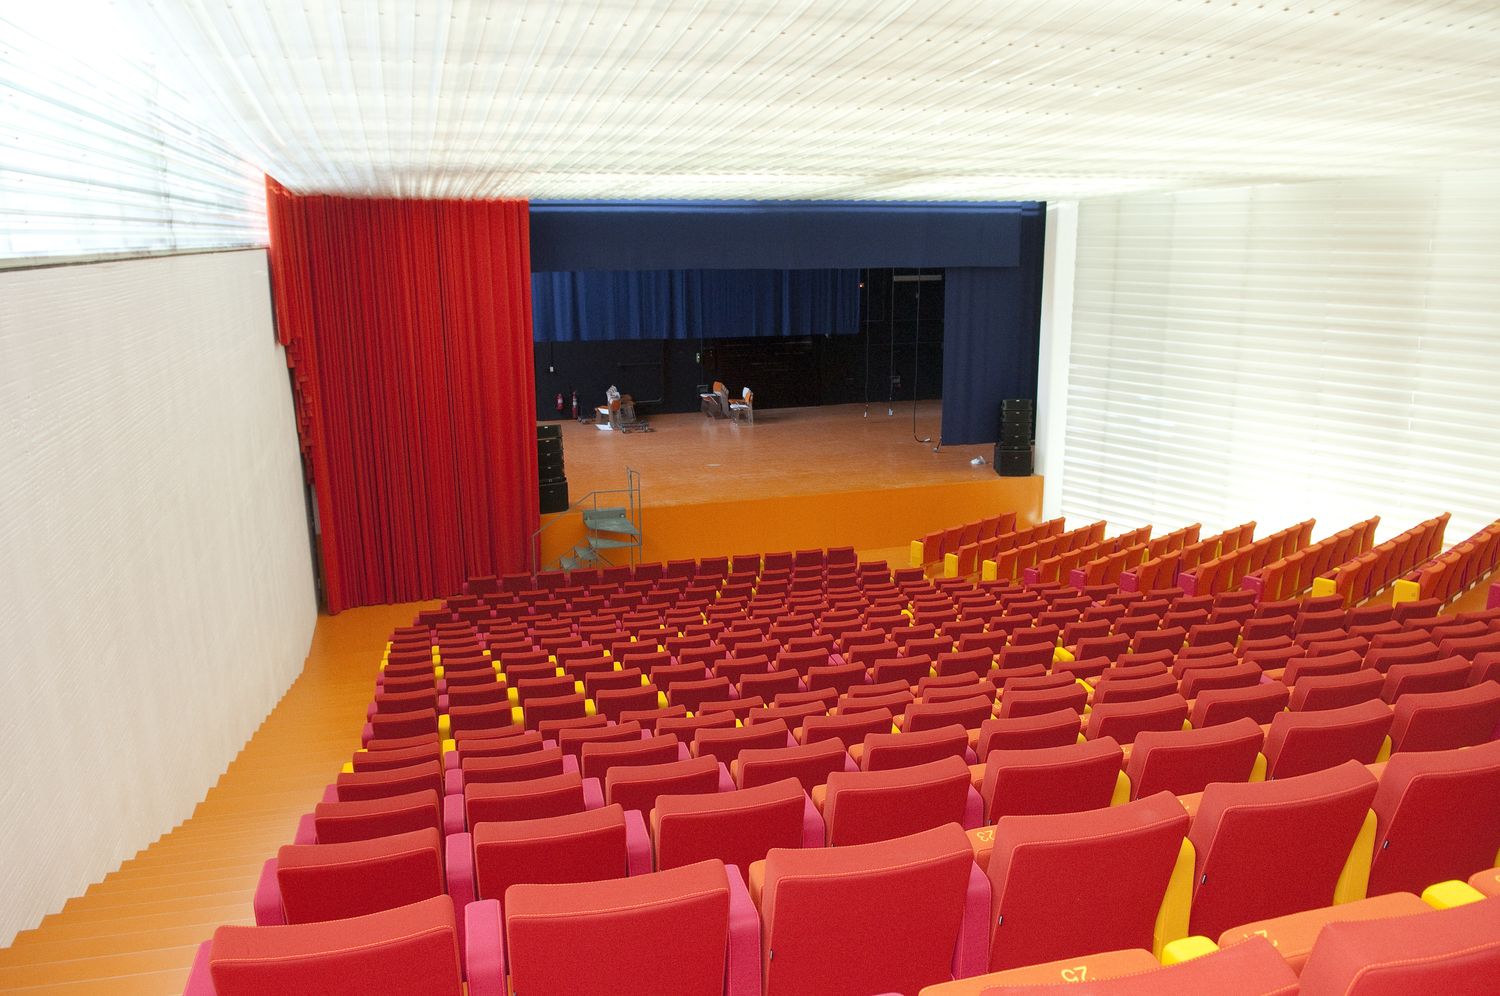 Visita al Auditorio y Palacio de Congresos El Batel